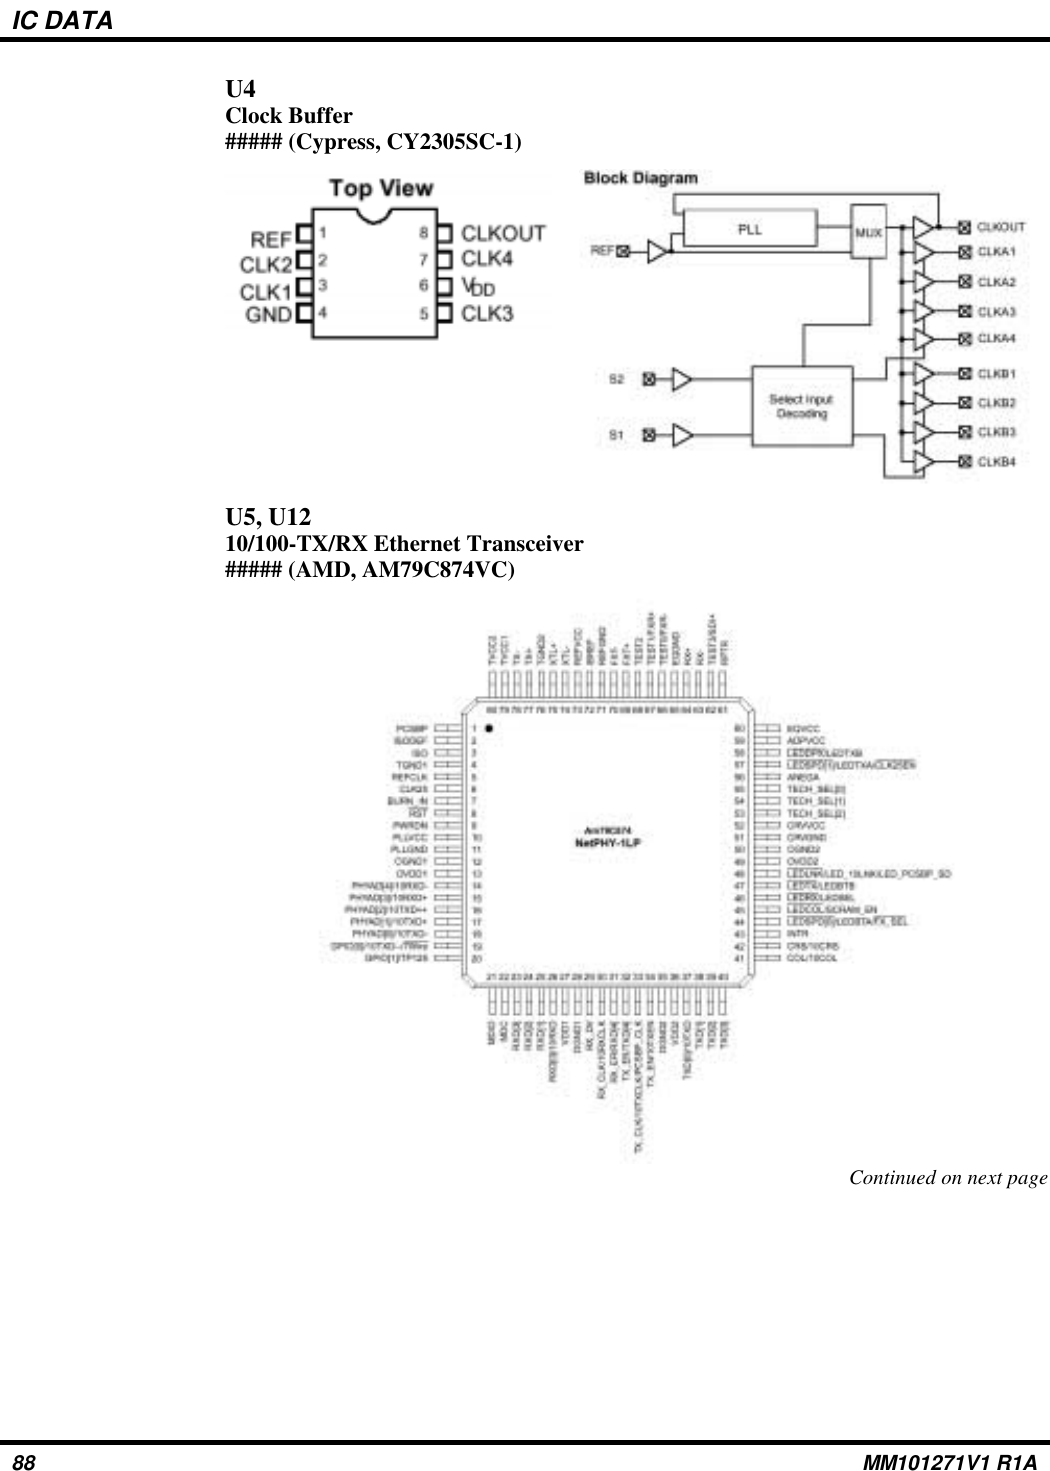 IC DATAU4Clock Buffer##### (Cypress, CY2305SC-1)U5, U1210/100-TX/RX Ethernet Transceiver##### (AMD, AM79C874VC)Continued on next page88 MM101271V1 R1A